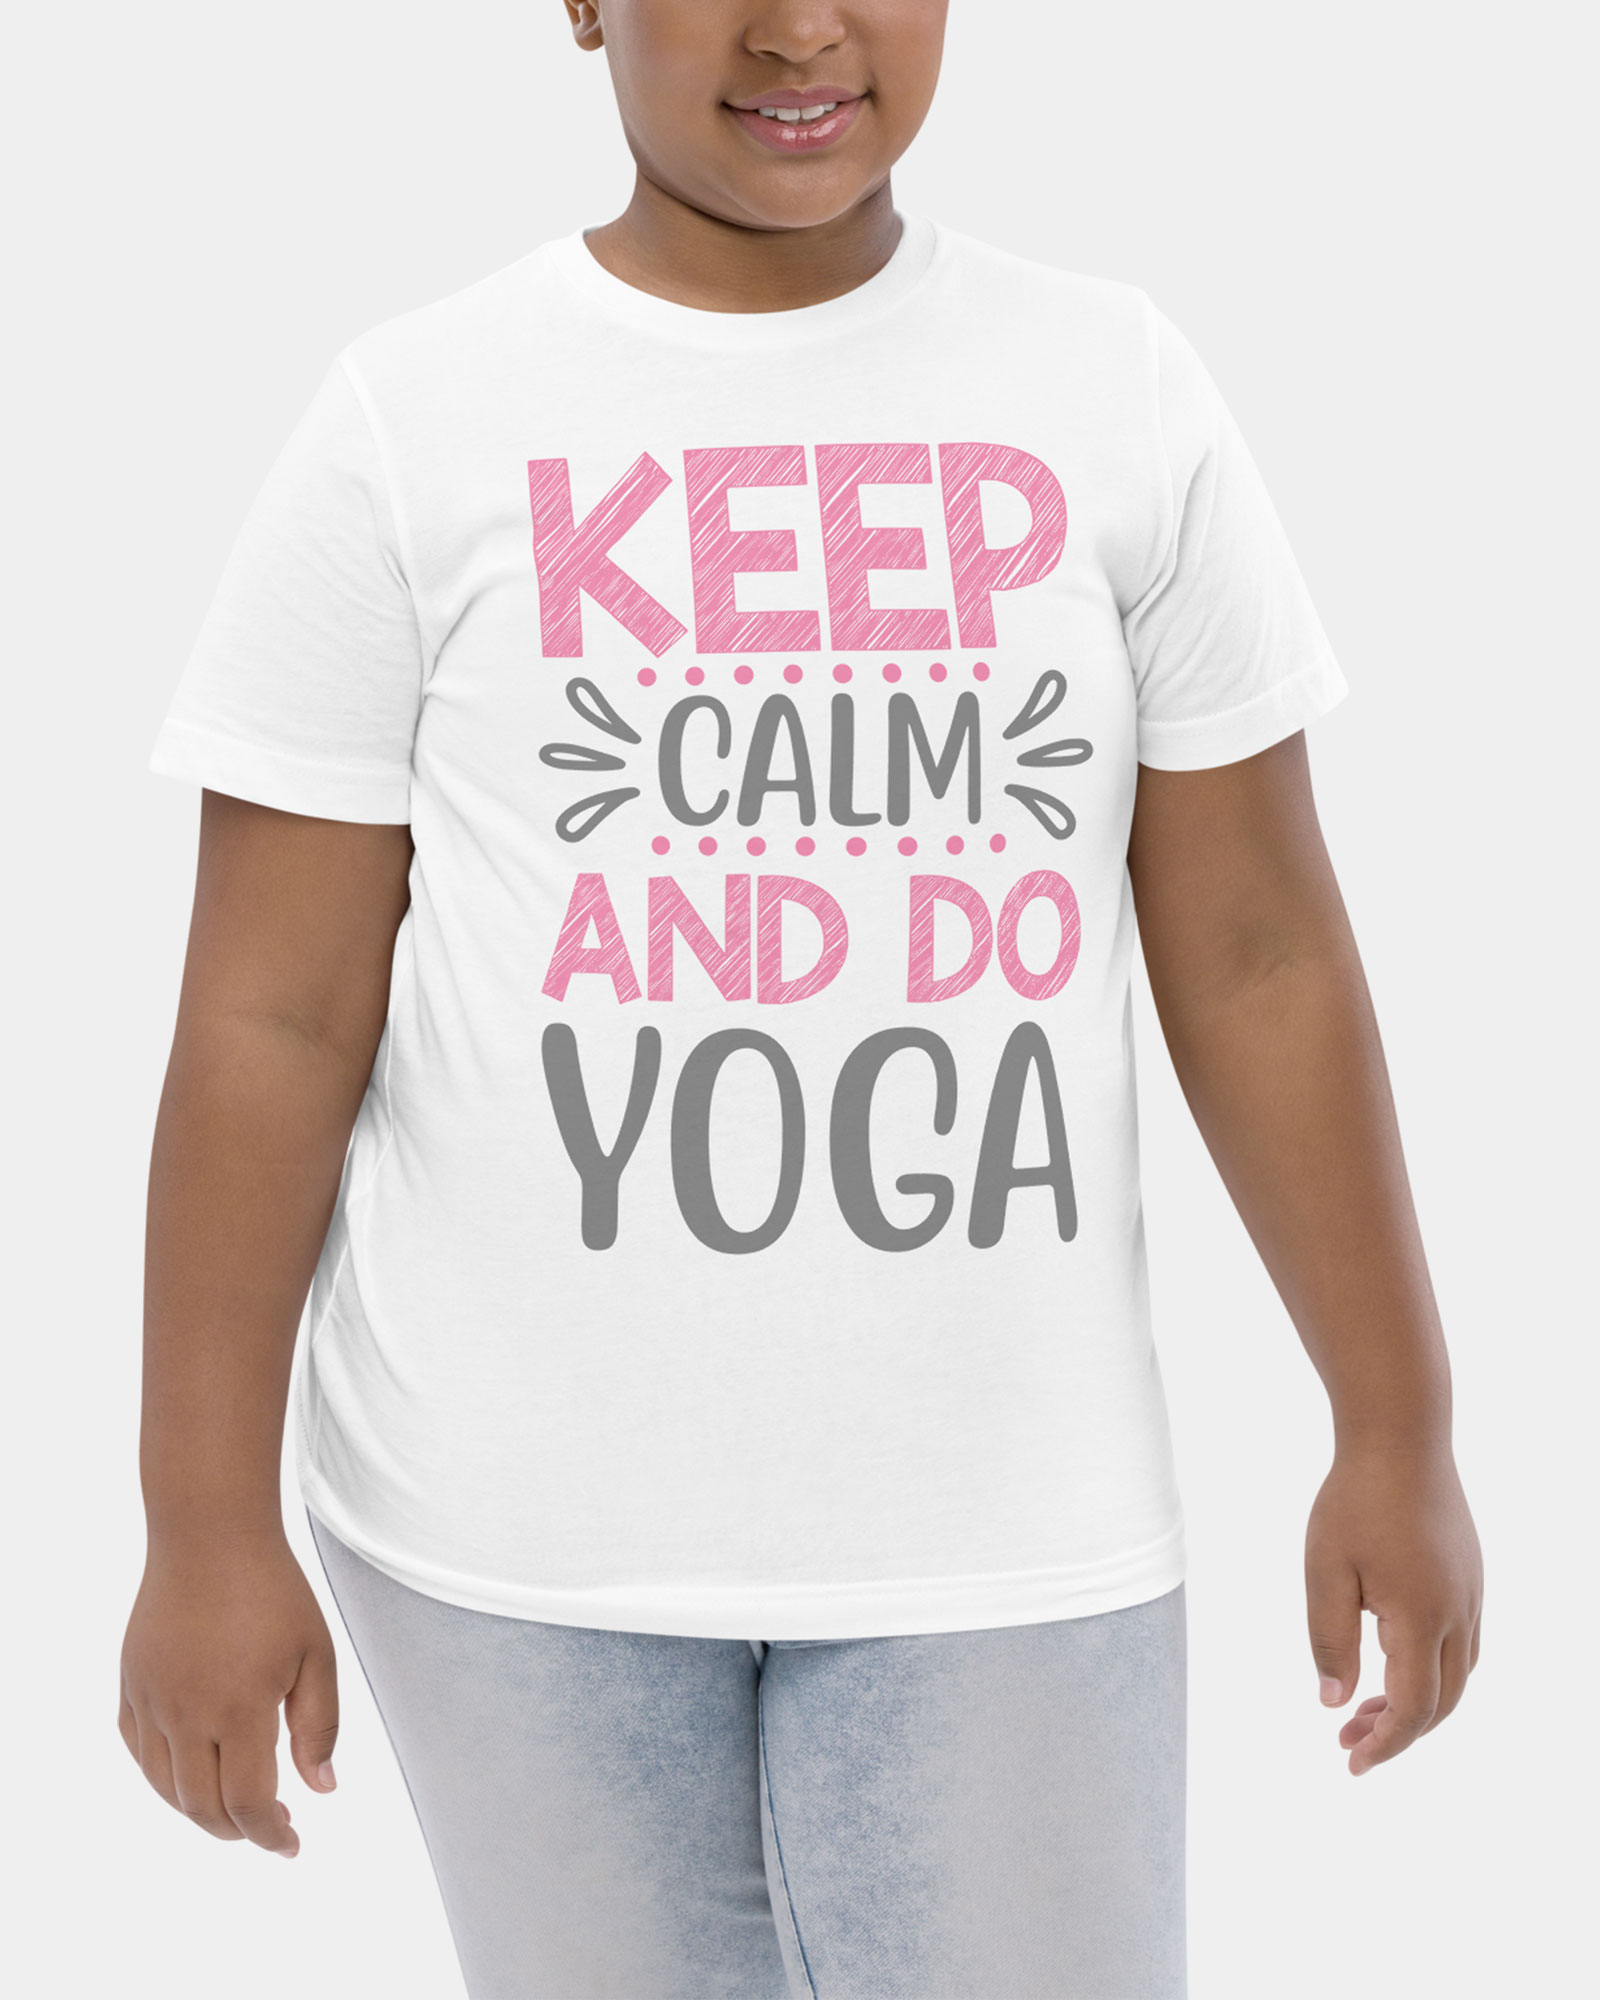 Keep calm and do yoga tshirt for girl